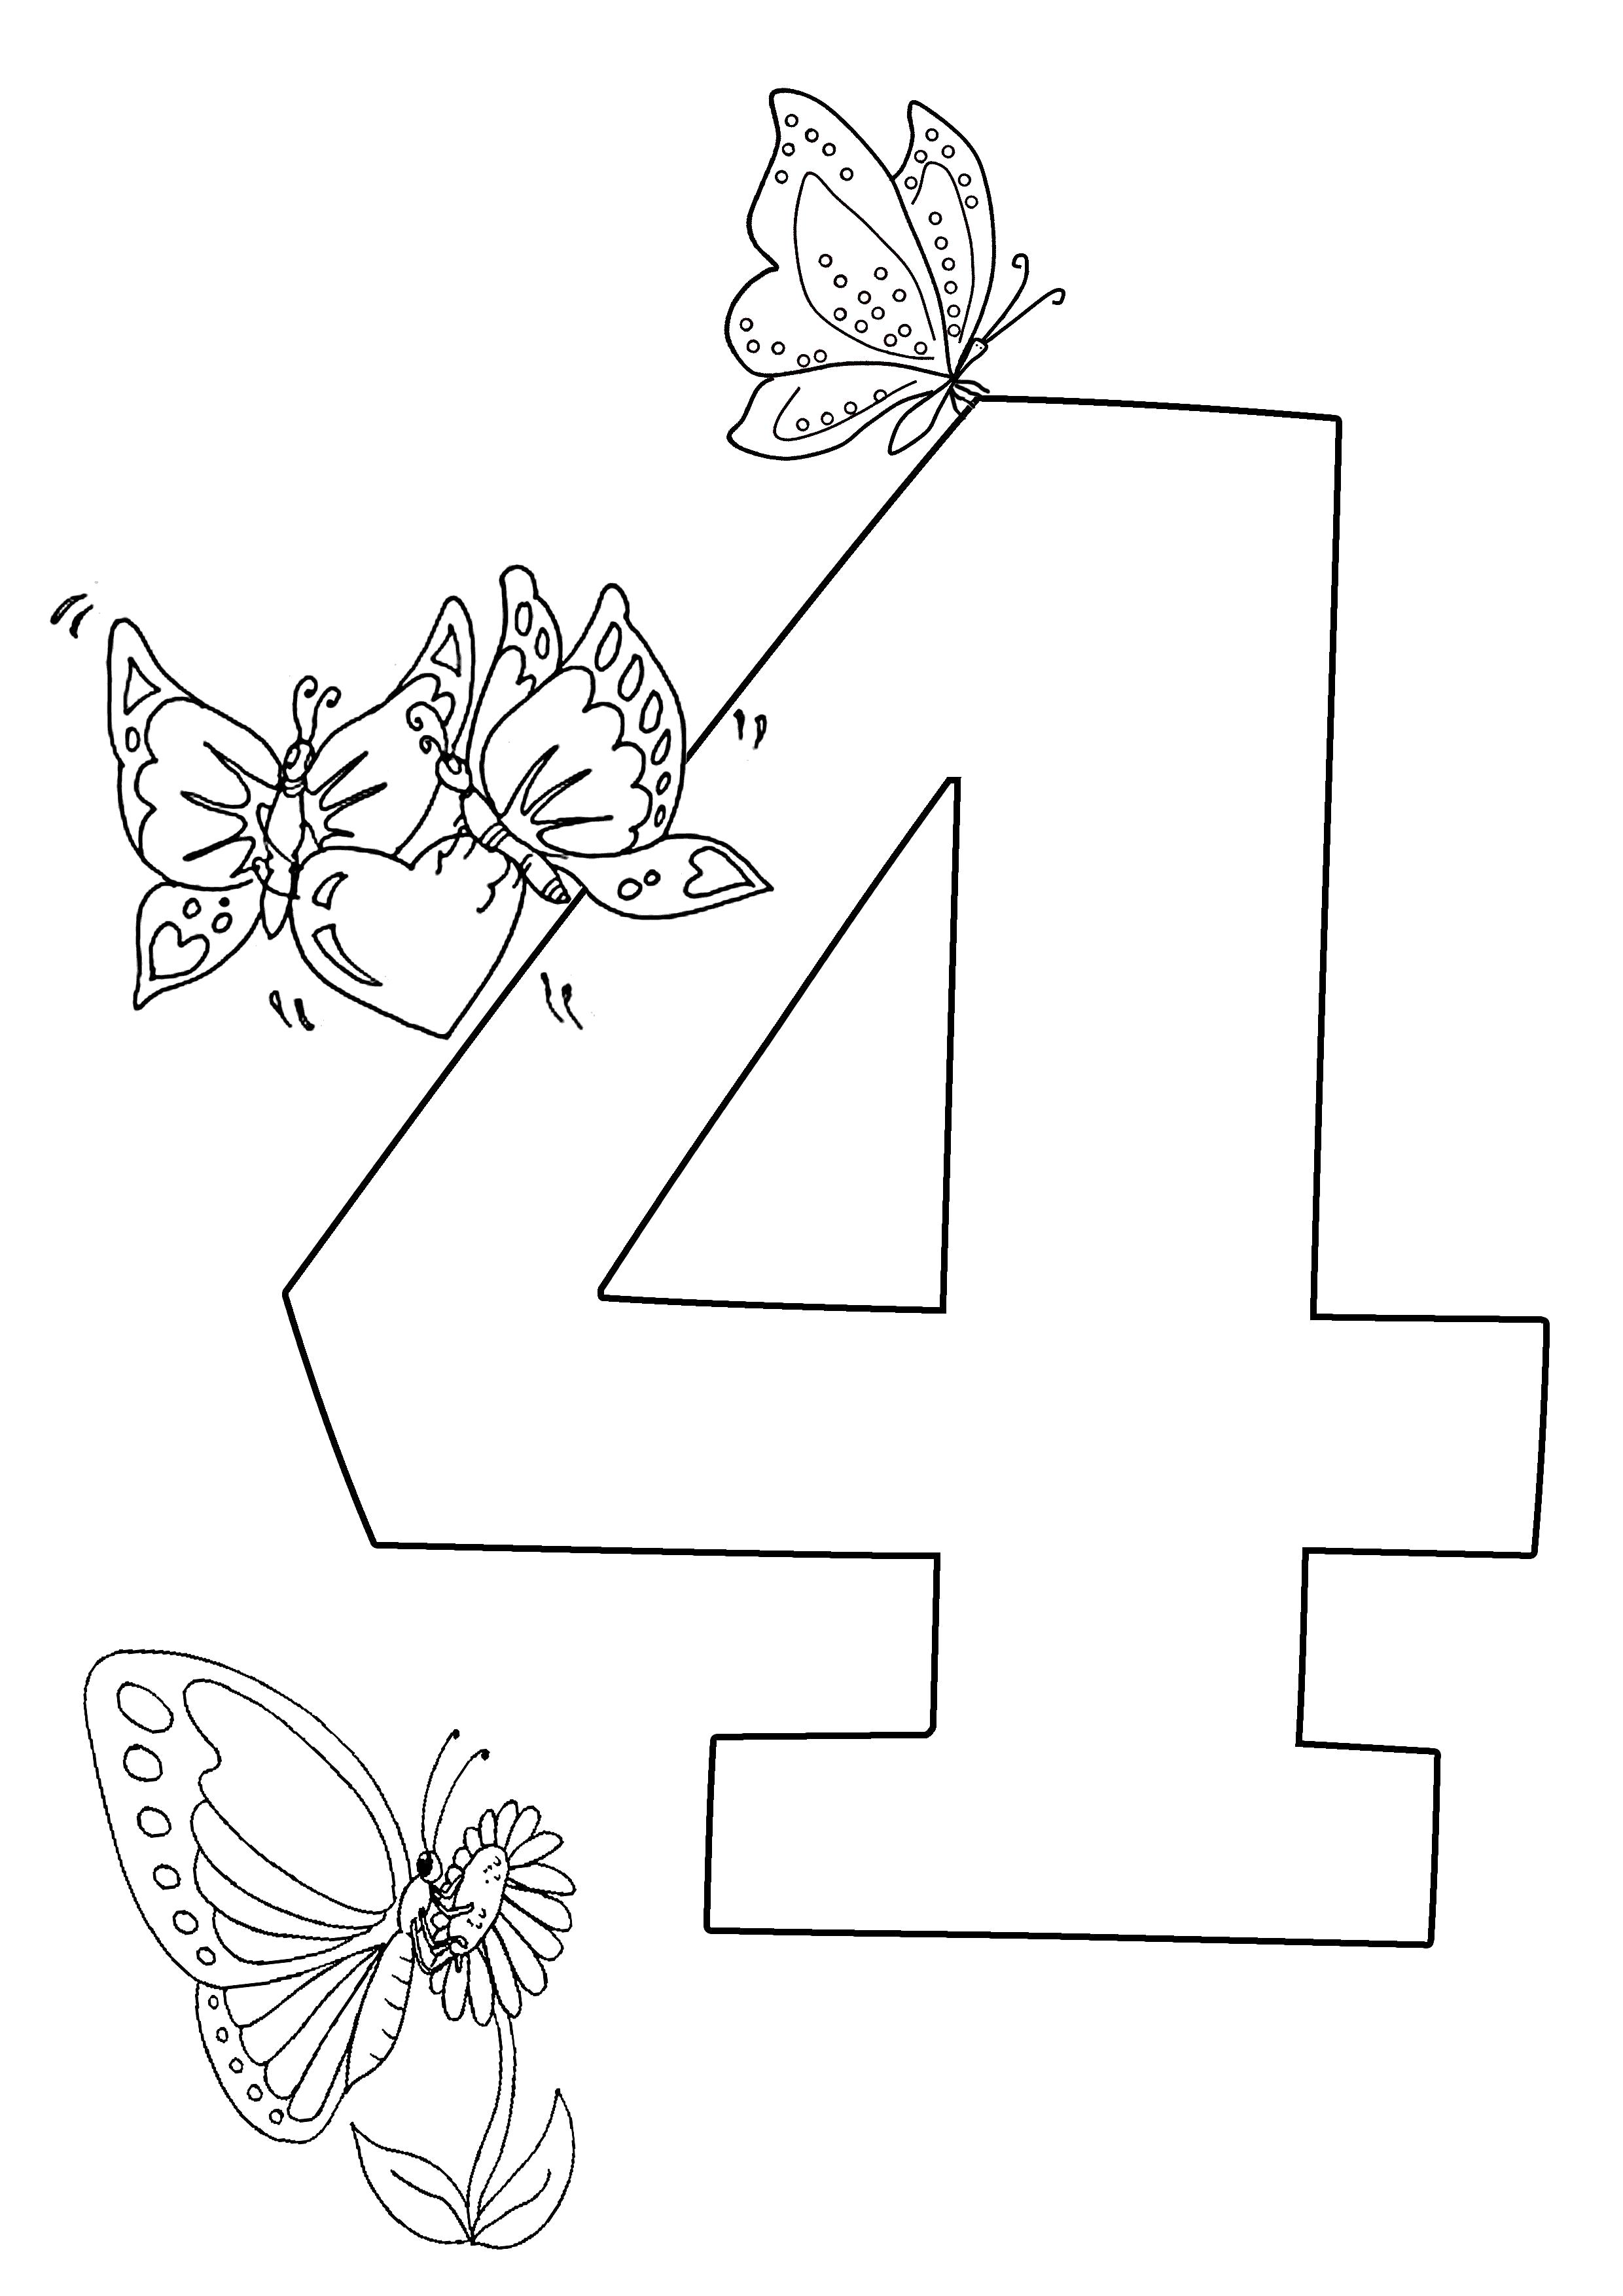 Раскраска Веселый счет четыре бабочки. Скачать с цифрами.  Распечатать с цифрами